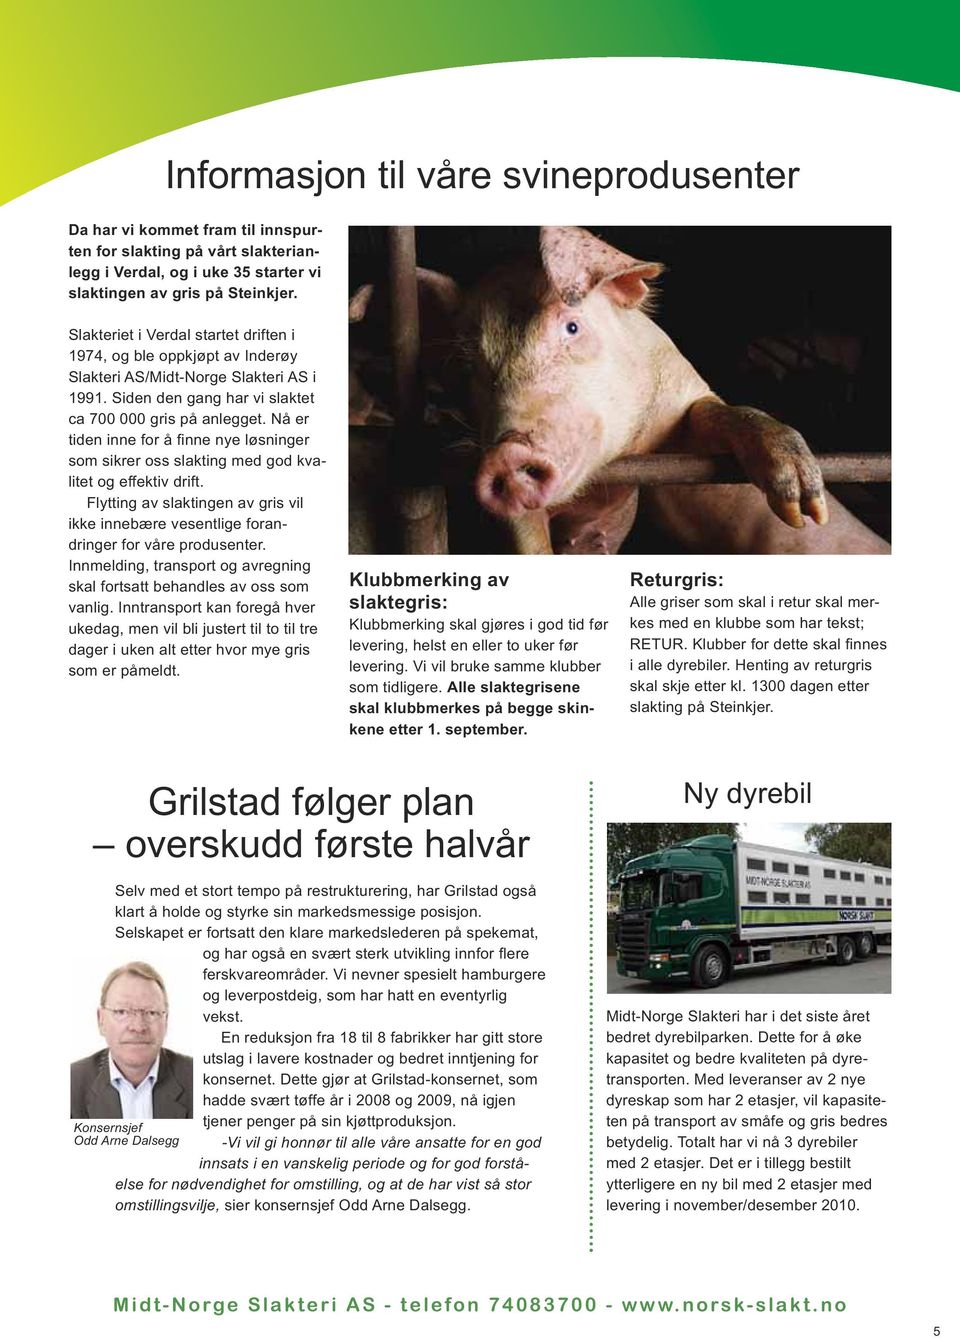 Nå er tiden inne for å finne nye løsninger som sikrer oss slakting med god kvalitet og effektiv drift. Flytting av slaktingen av gris vil ikke innebære vesentlige forandringer for våre produsenter.